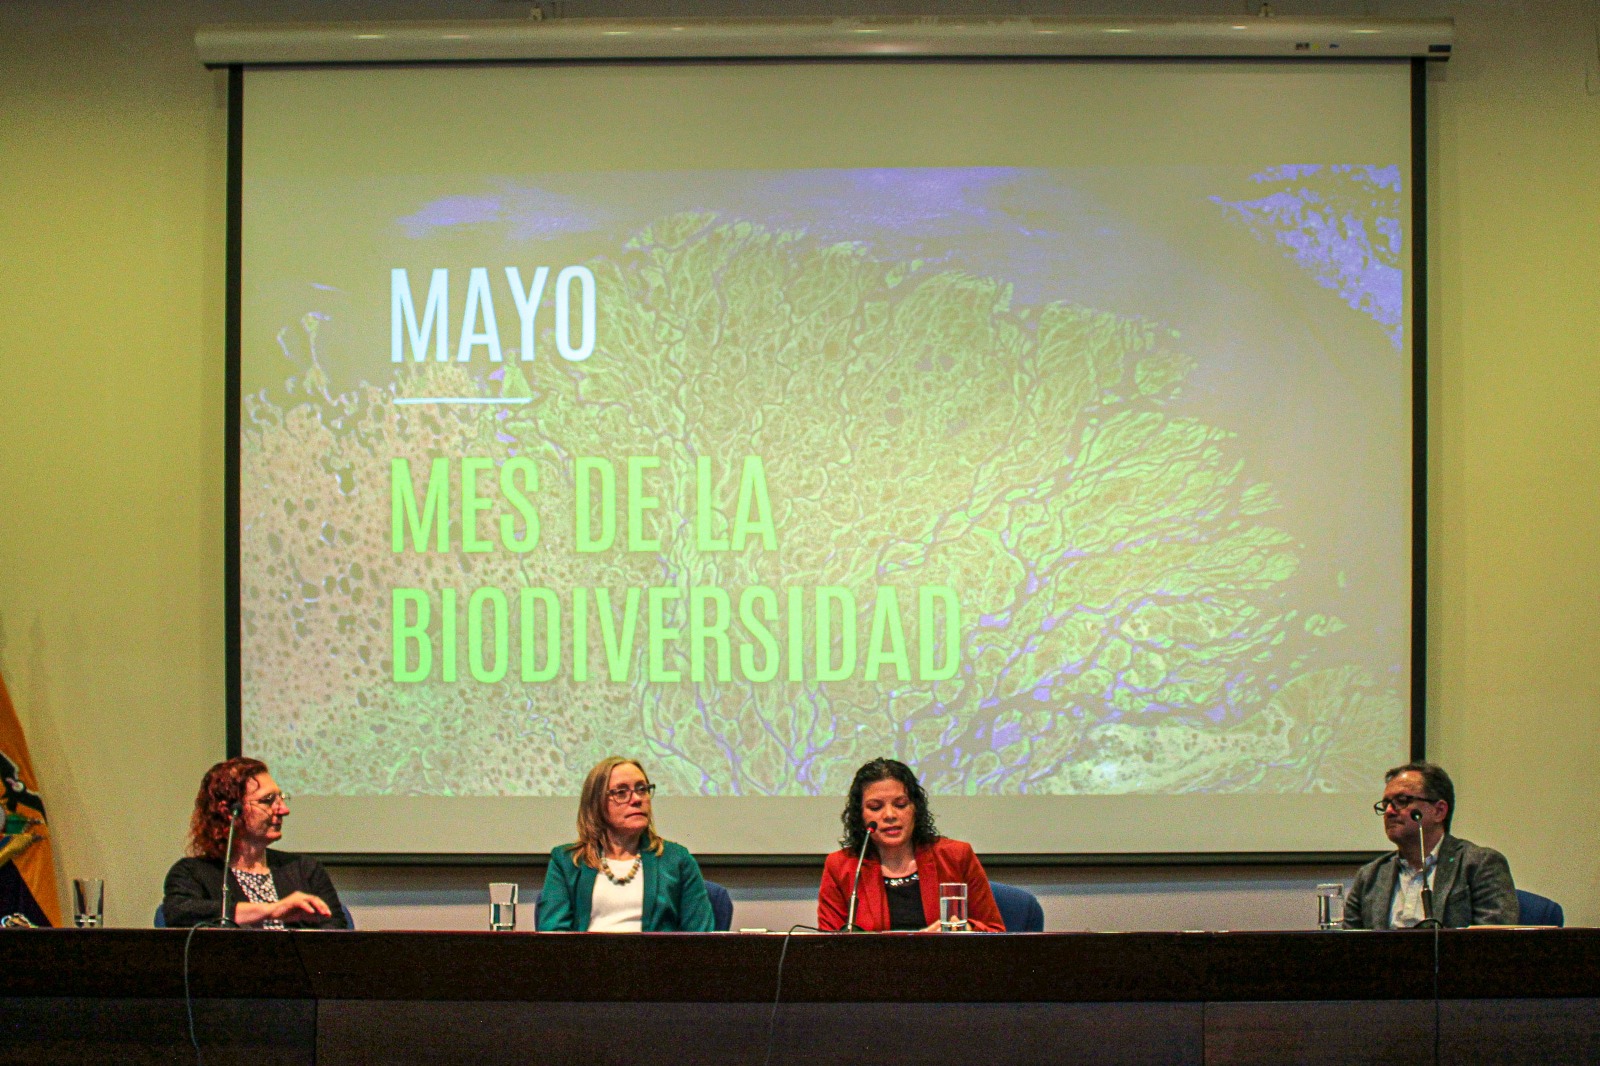 Ecuador Biodiverso - Alianza por la biodiversidad 2023